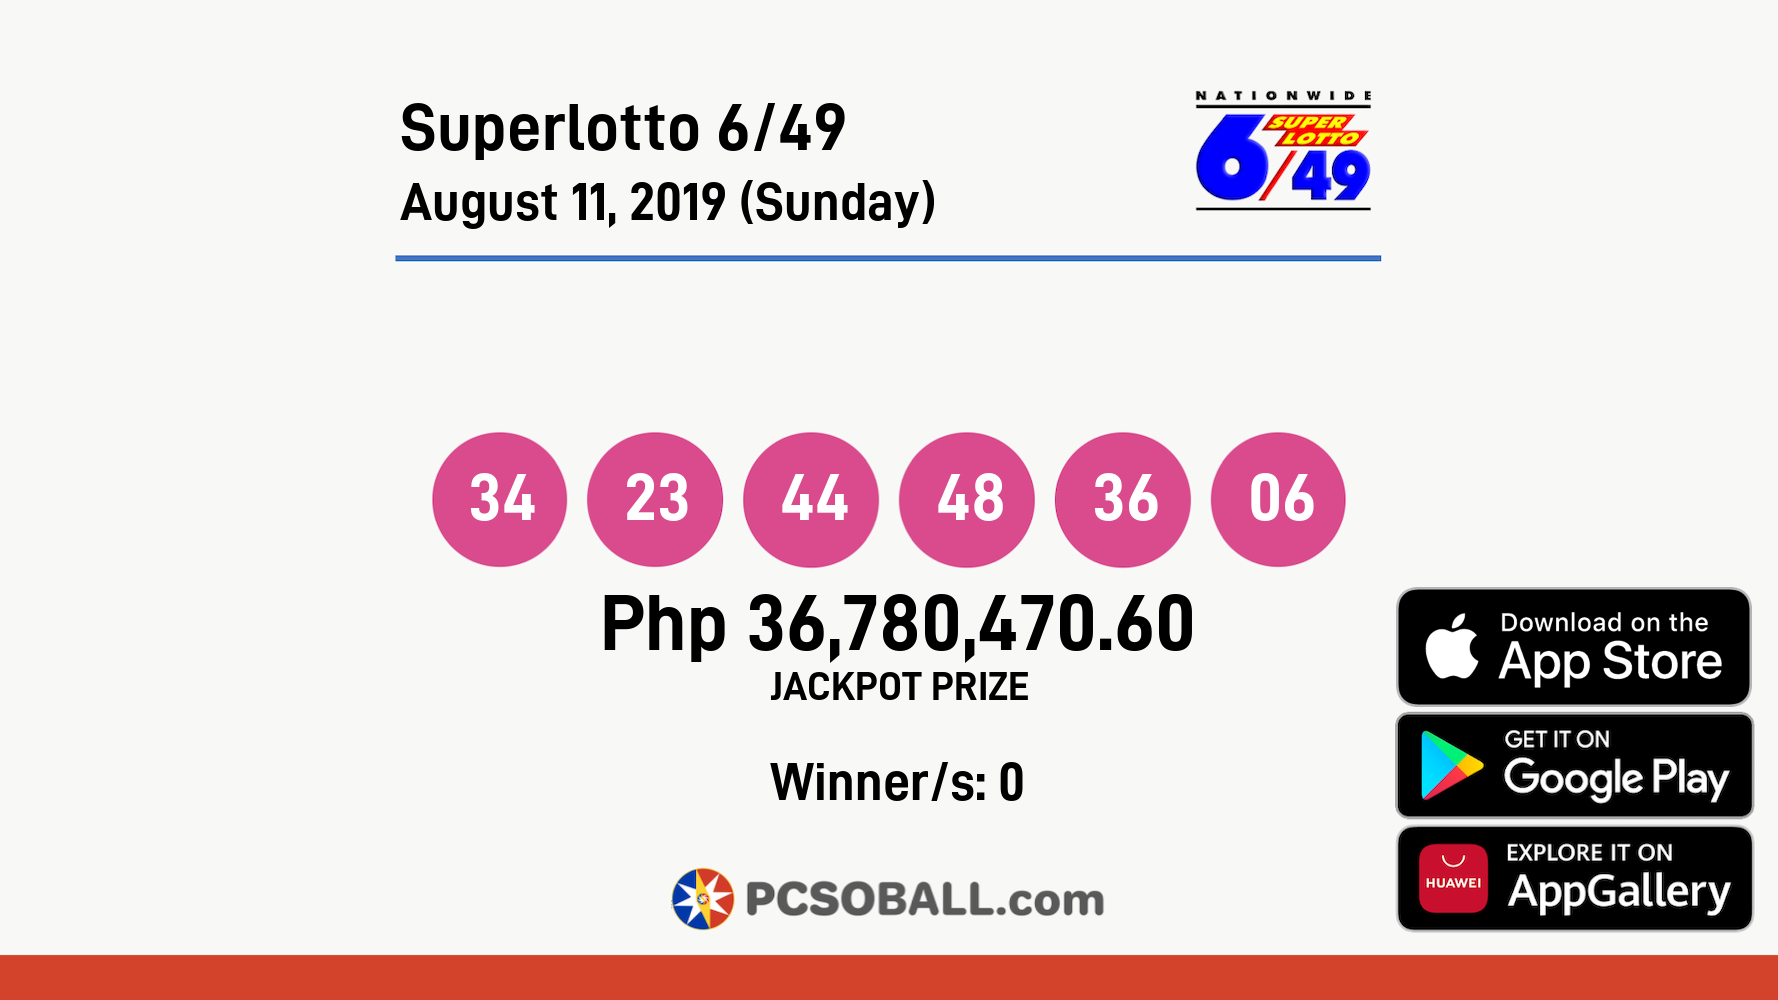 Superlotto 6/49 August 11, 2019 (Sunday) Result